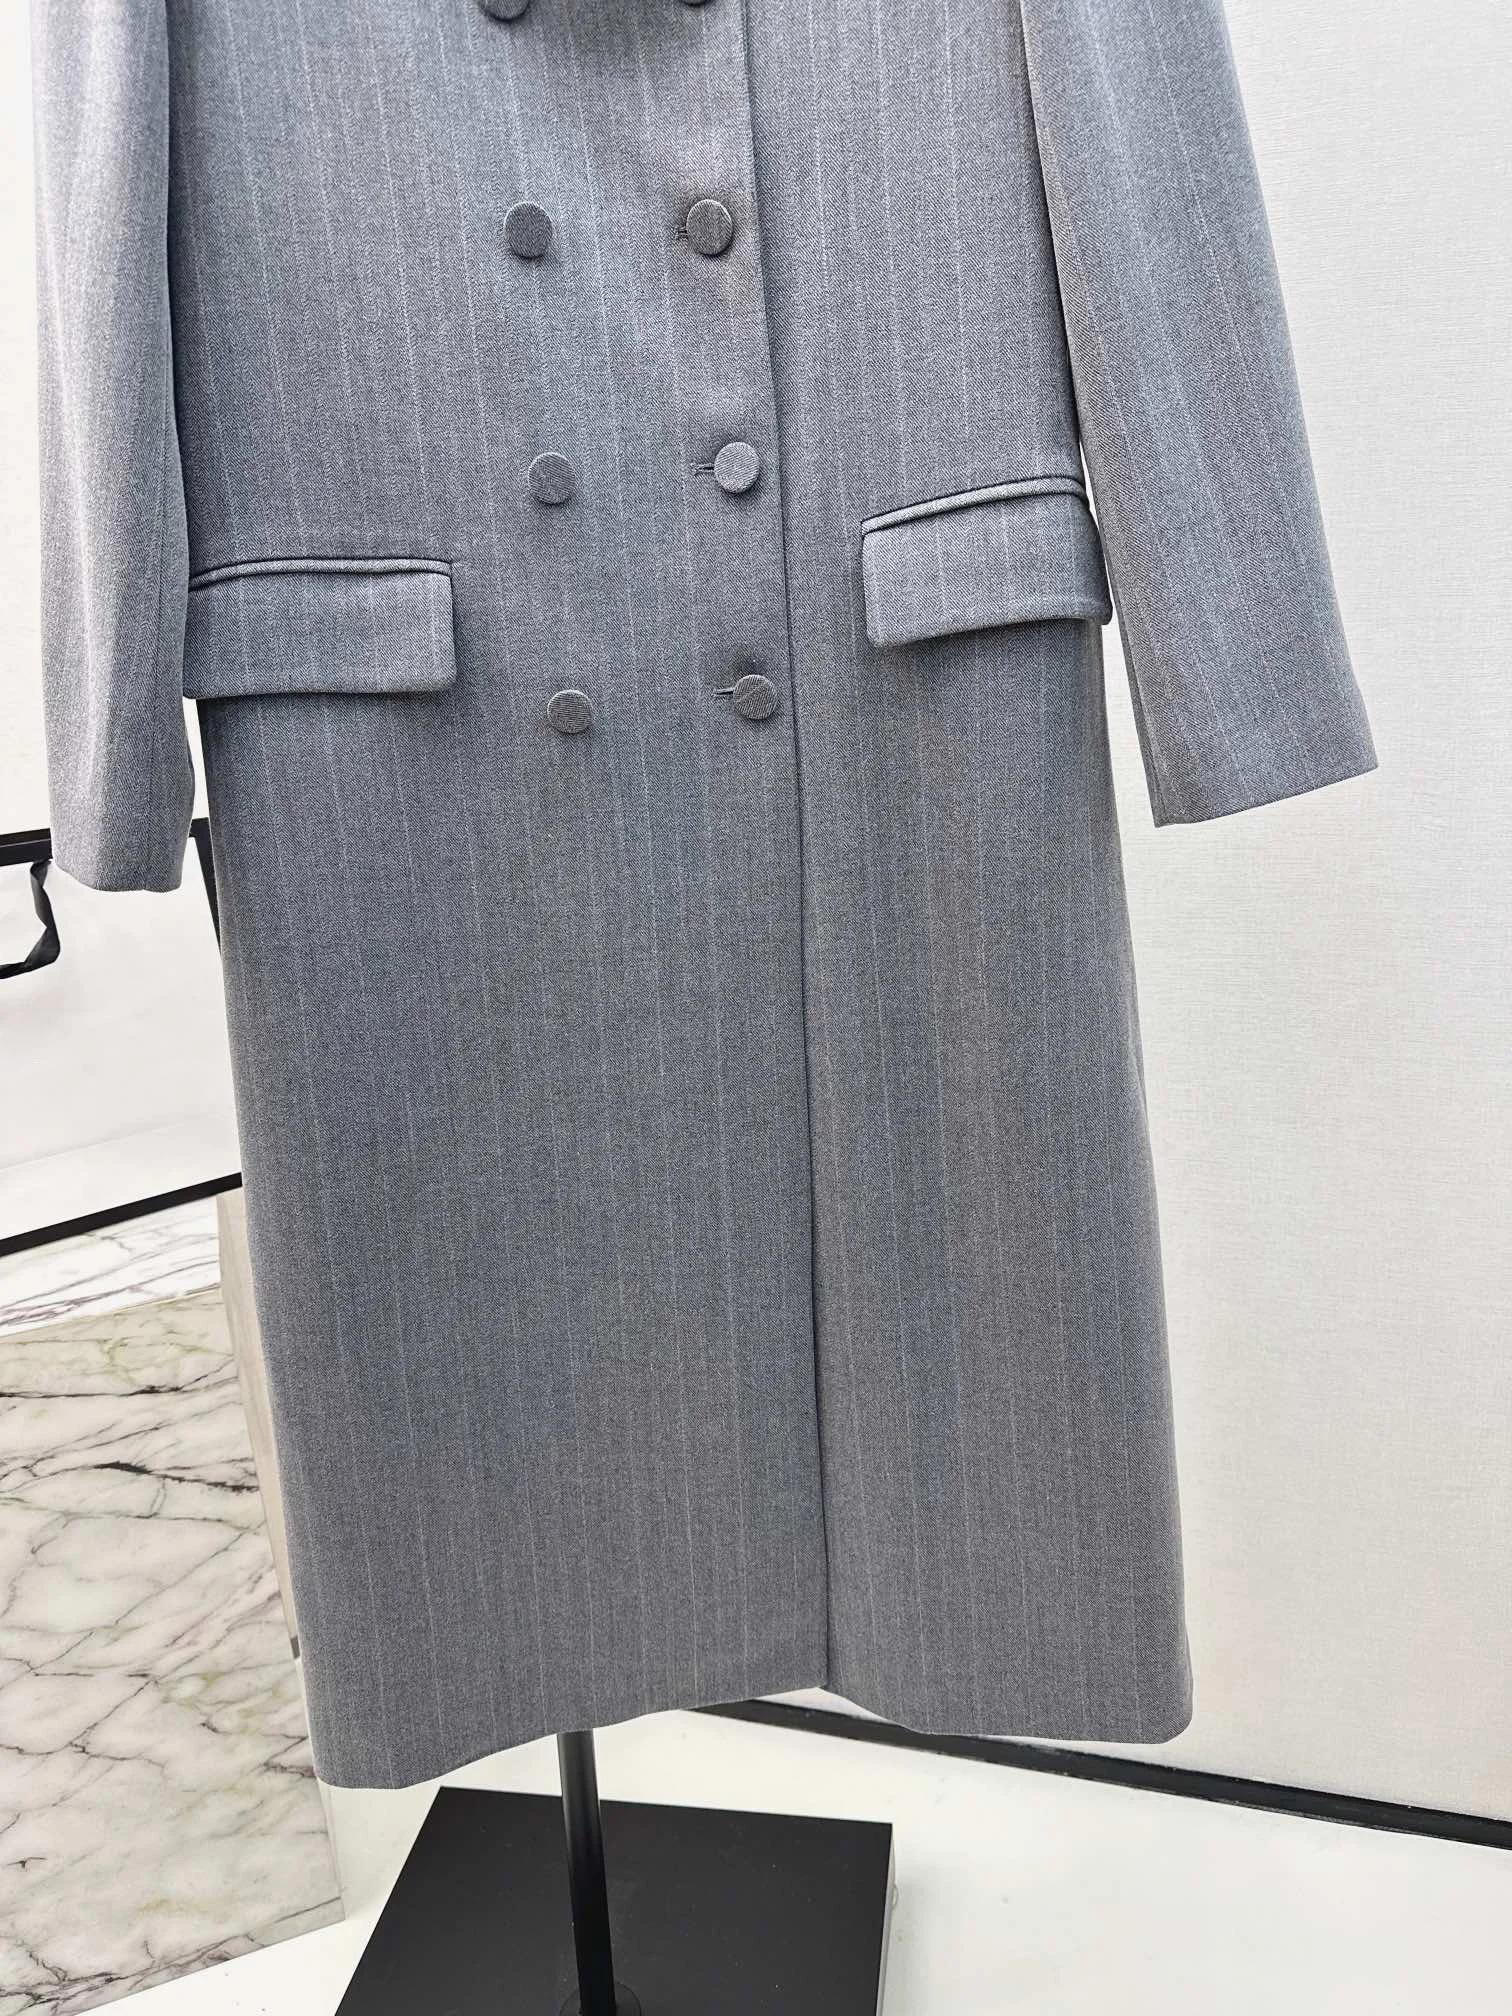 Ženska odjeća 2023 godine, двубортное dugi kaput u камвольную tamnu ćeliju, jesen-zima, novo 1110 godine